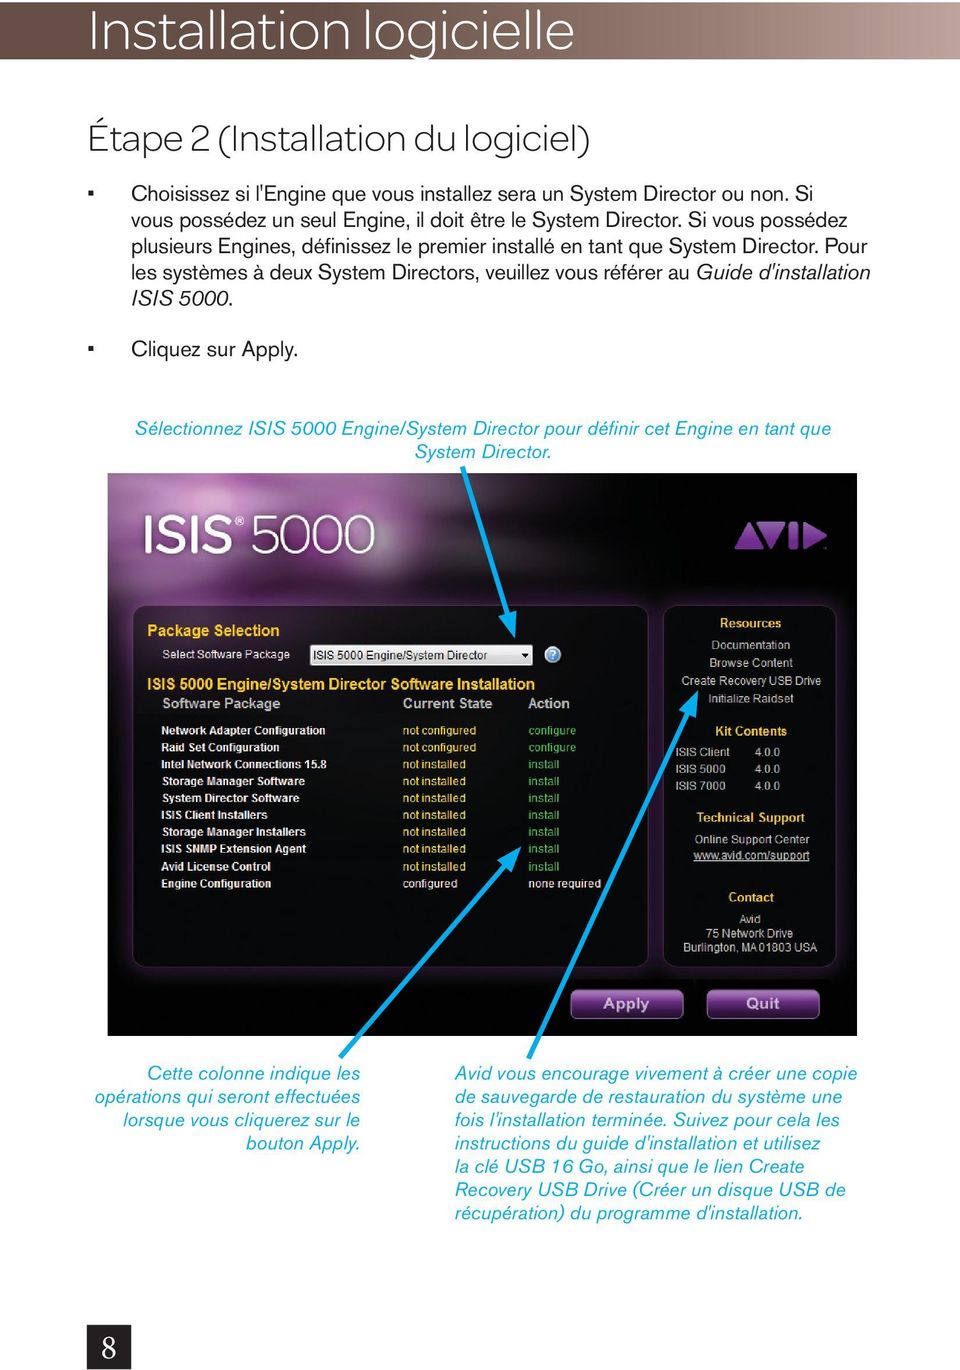 Cliquez sur Apply. Sélectionnez ISIS 5000 Engine/System Director pour définir cet Engine en tant que System Director.